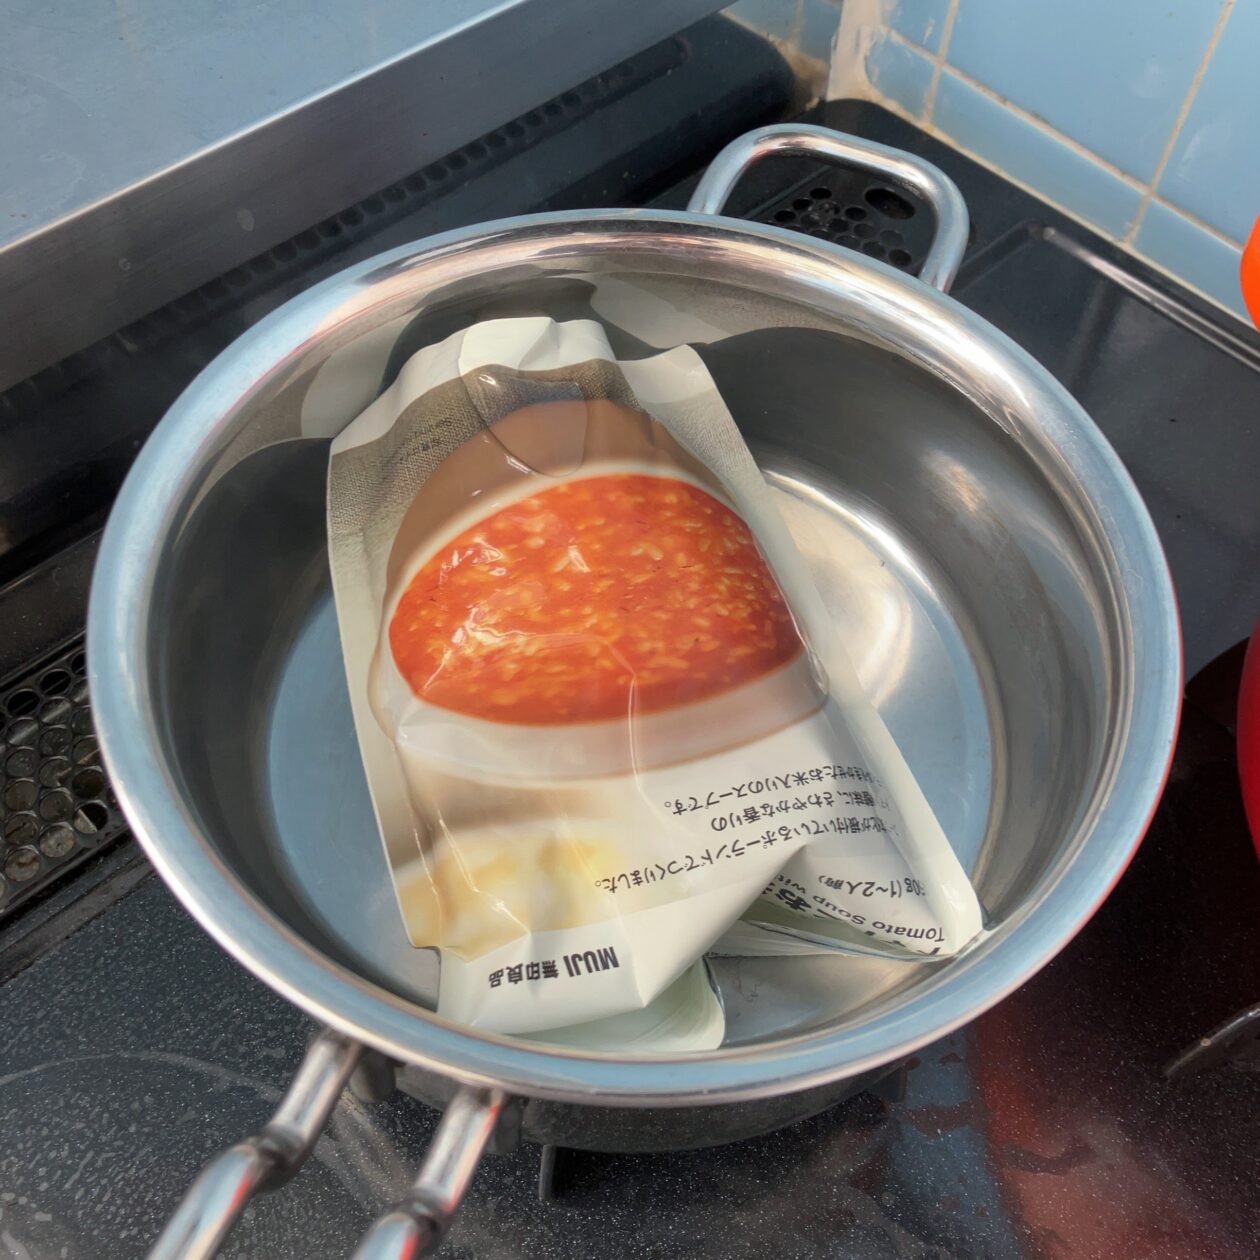 無印良品トマトとお米のスープを温めている画像